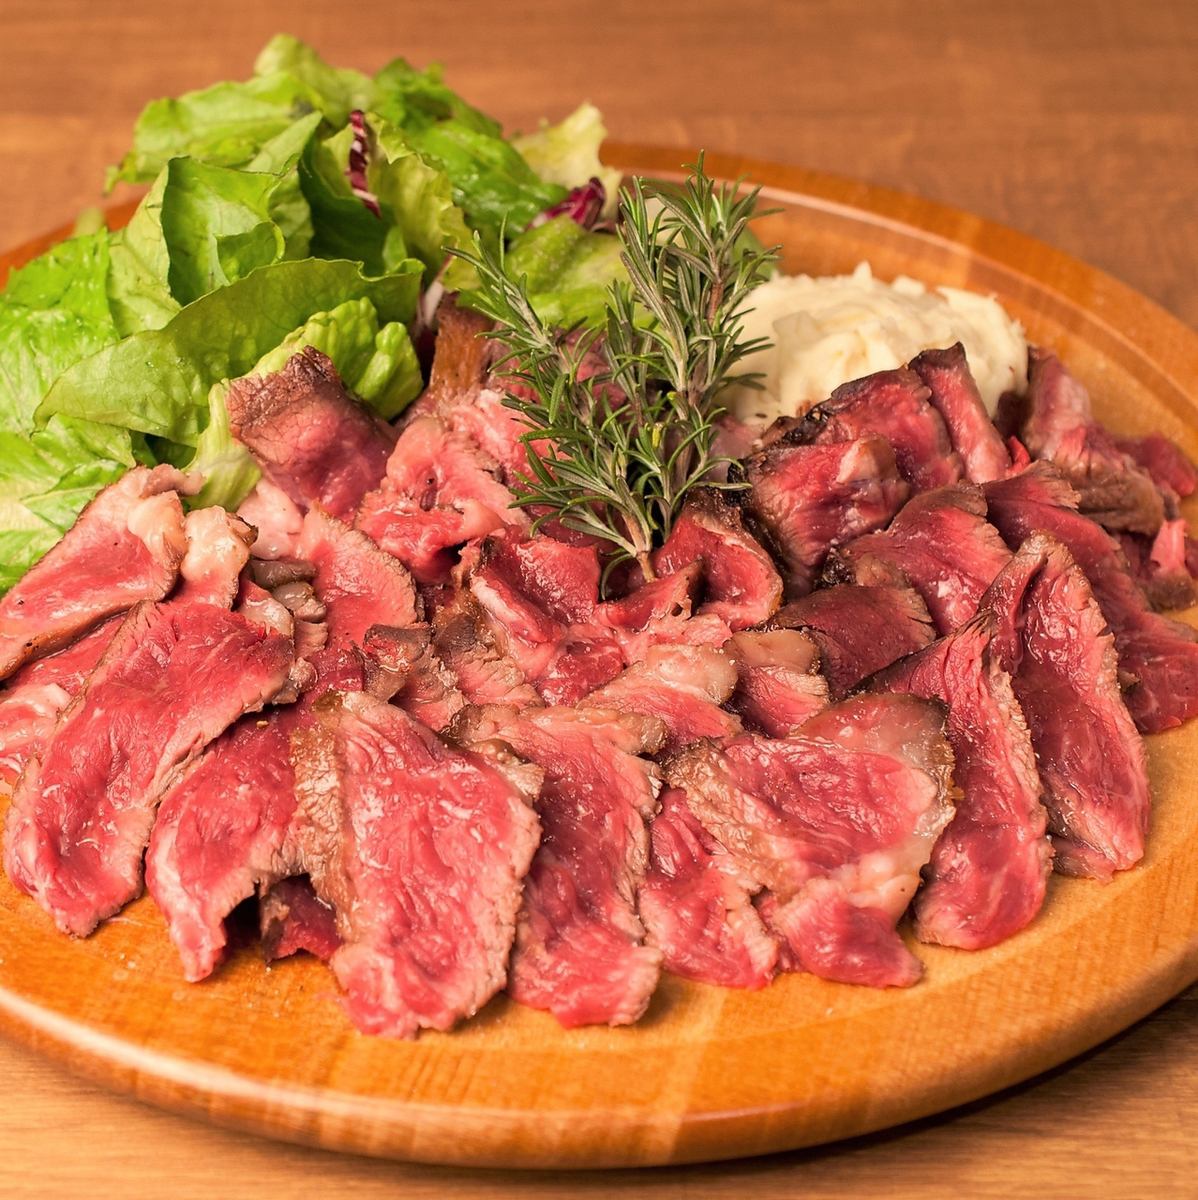 [숙성 고기 전문점] 루비 빛으로 빛나는 숙성 고기를 마음껏 즐겨주세요